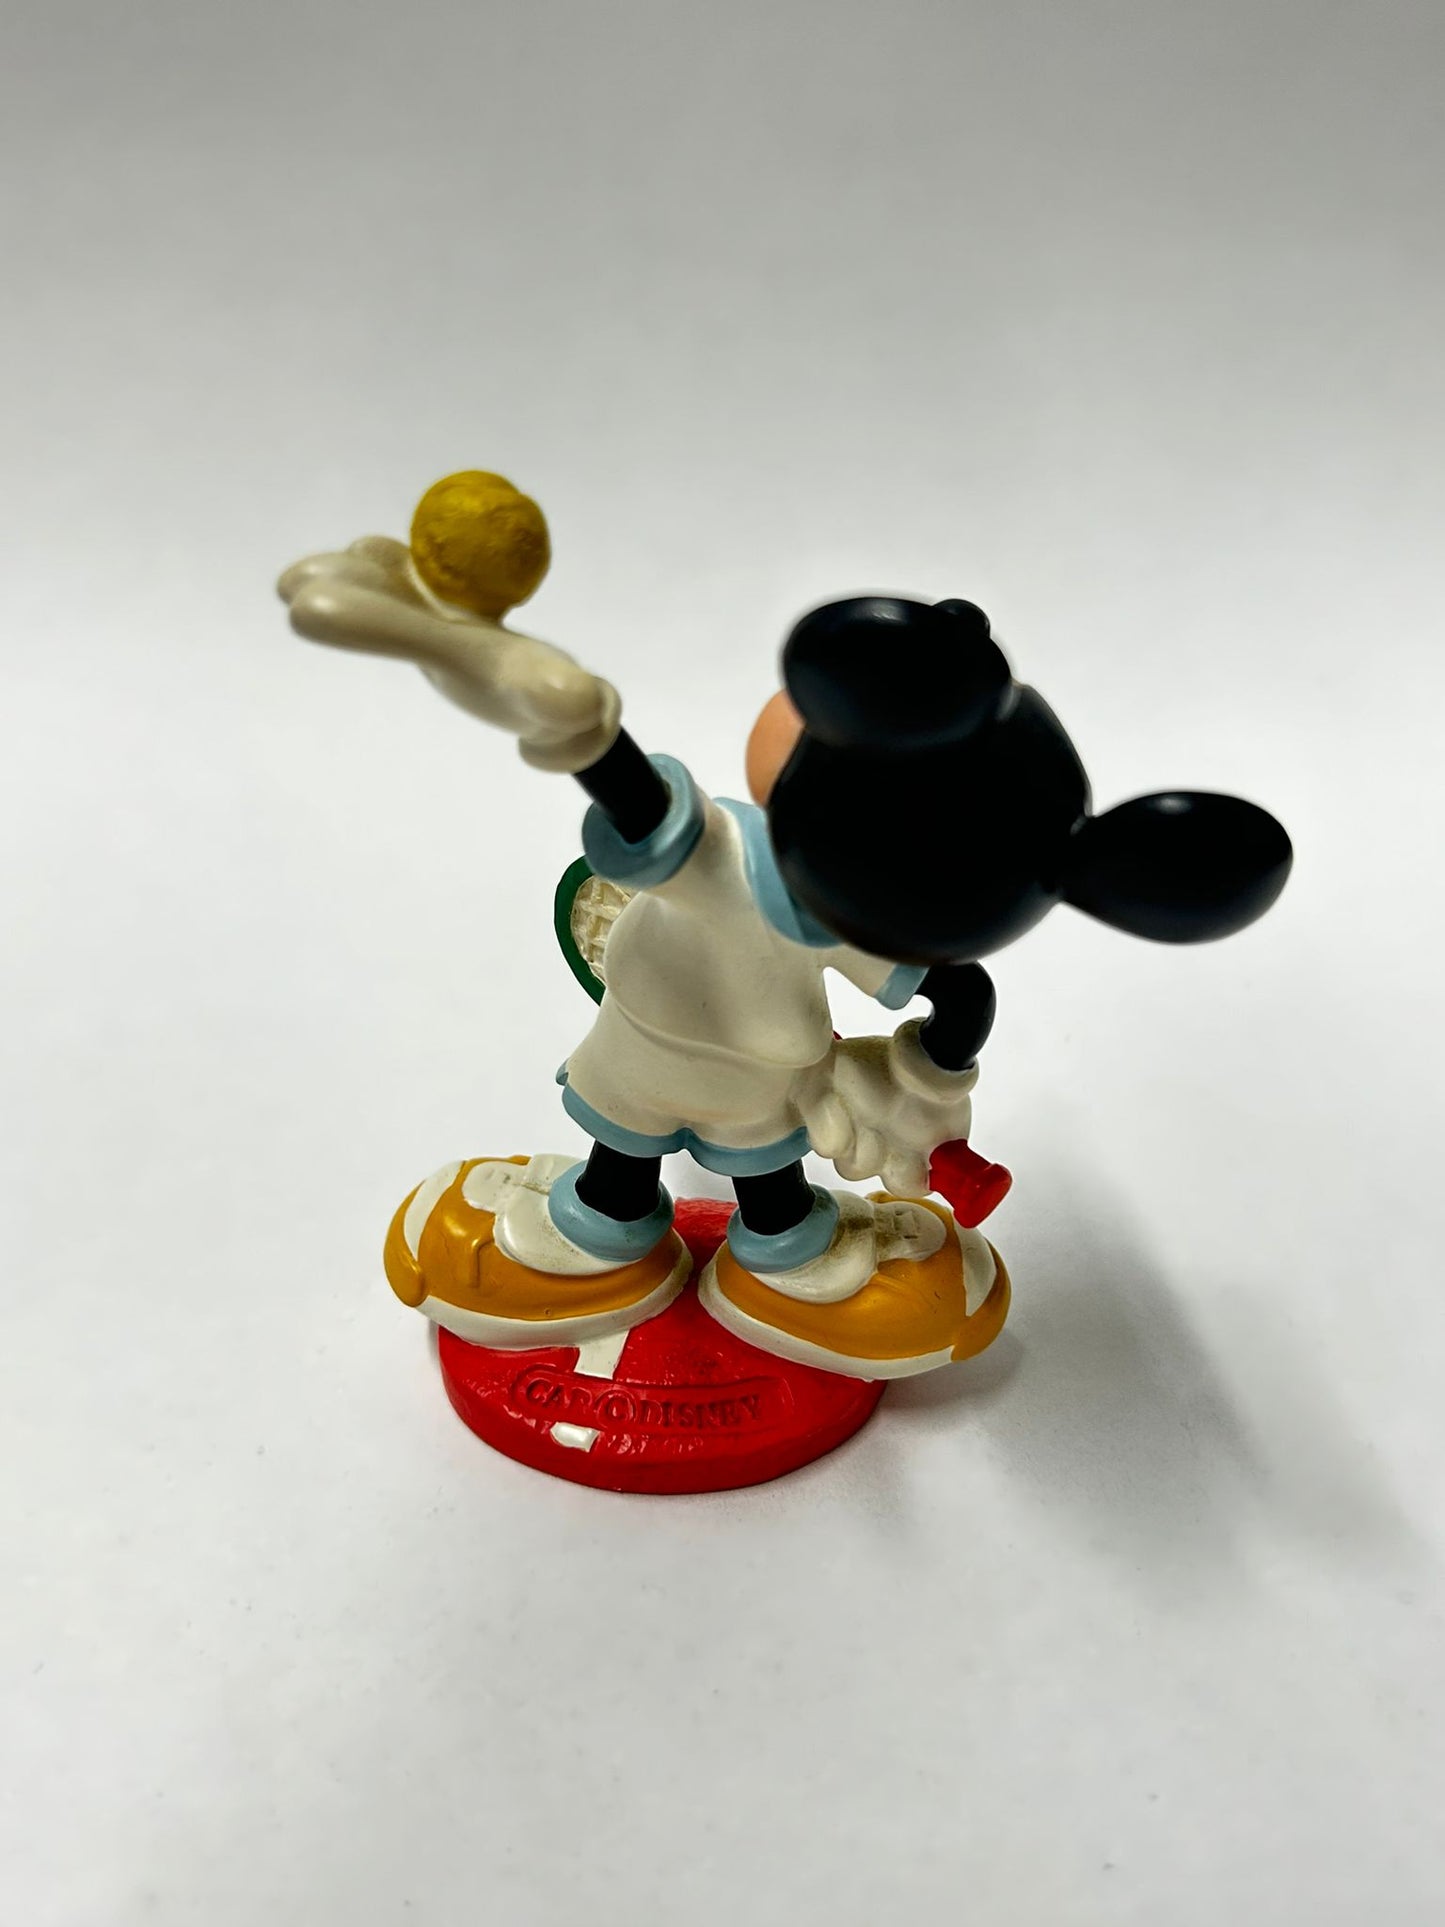 Mickey Tennis Figur aus Porzellan